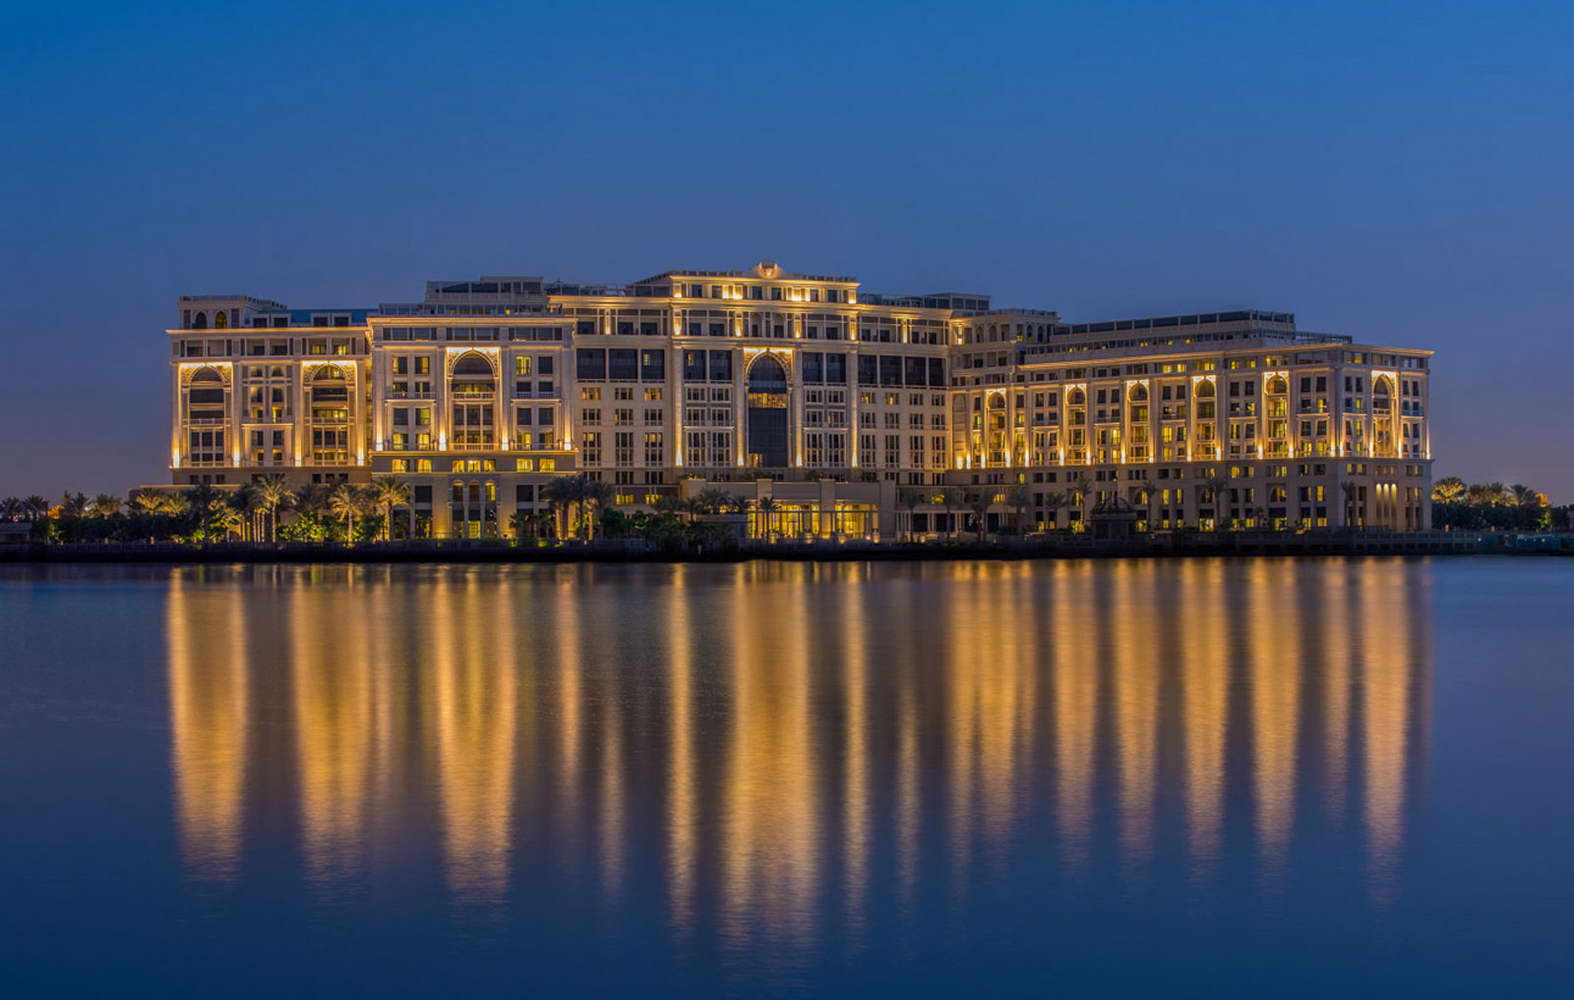 Versace Palace Hotel Dubai, Qatar, Cremo Delicato, Giallo Siena - Marble+